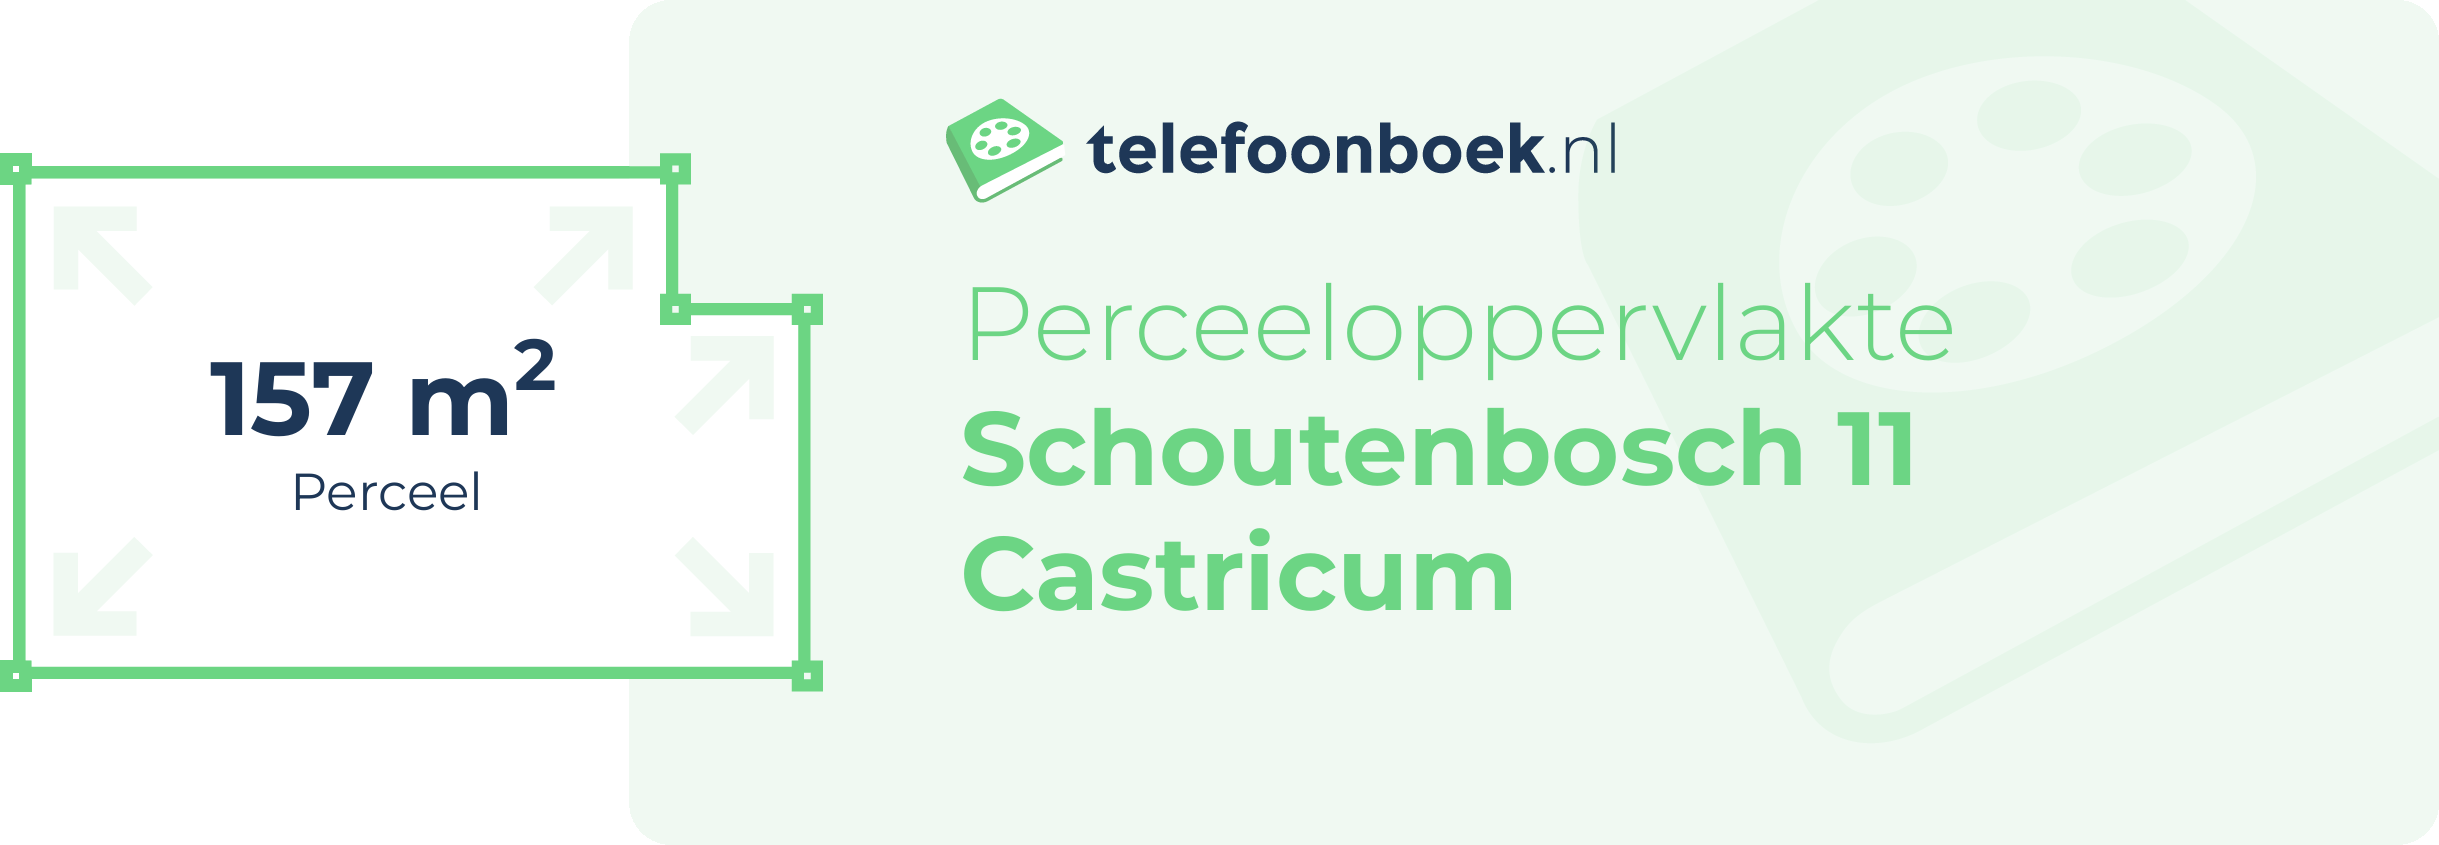 Perceeloppervlakte Schoutenbosch 11 Castricum